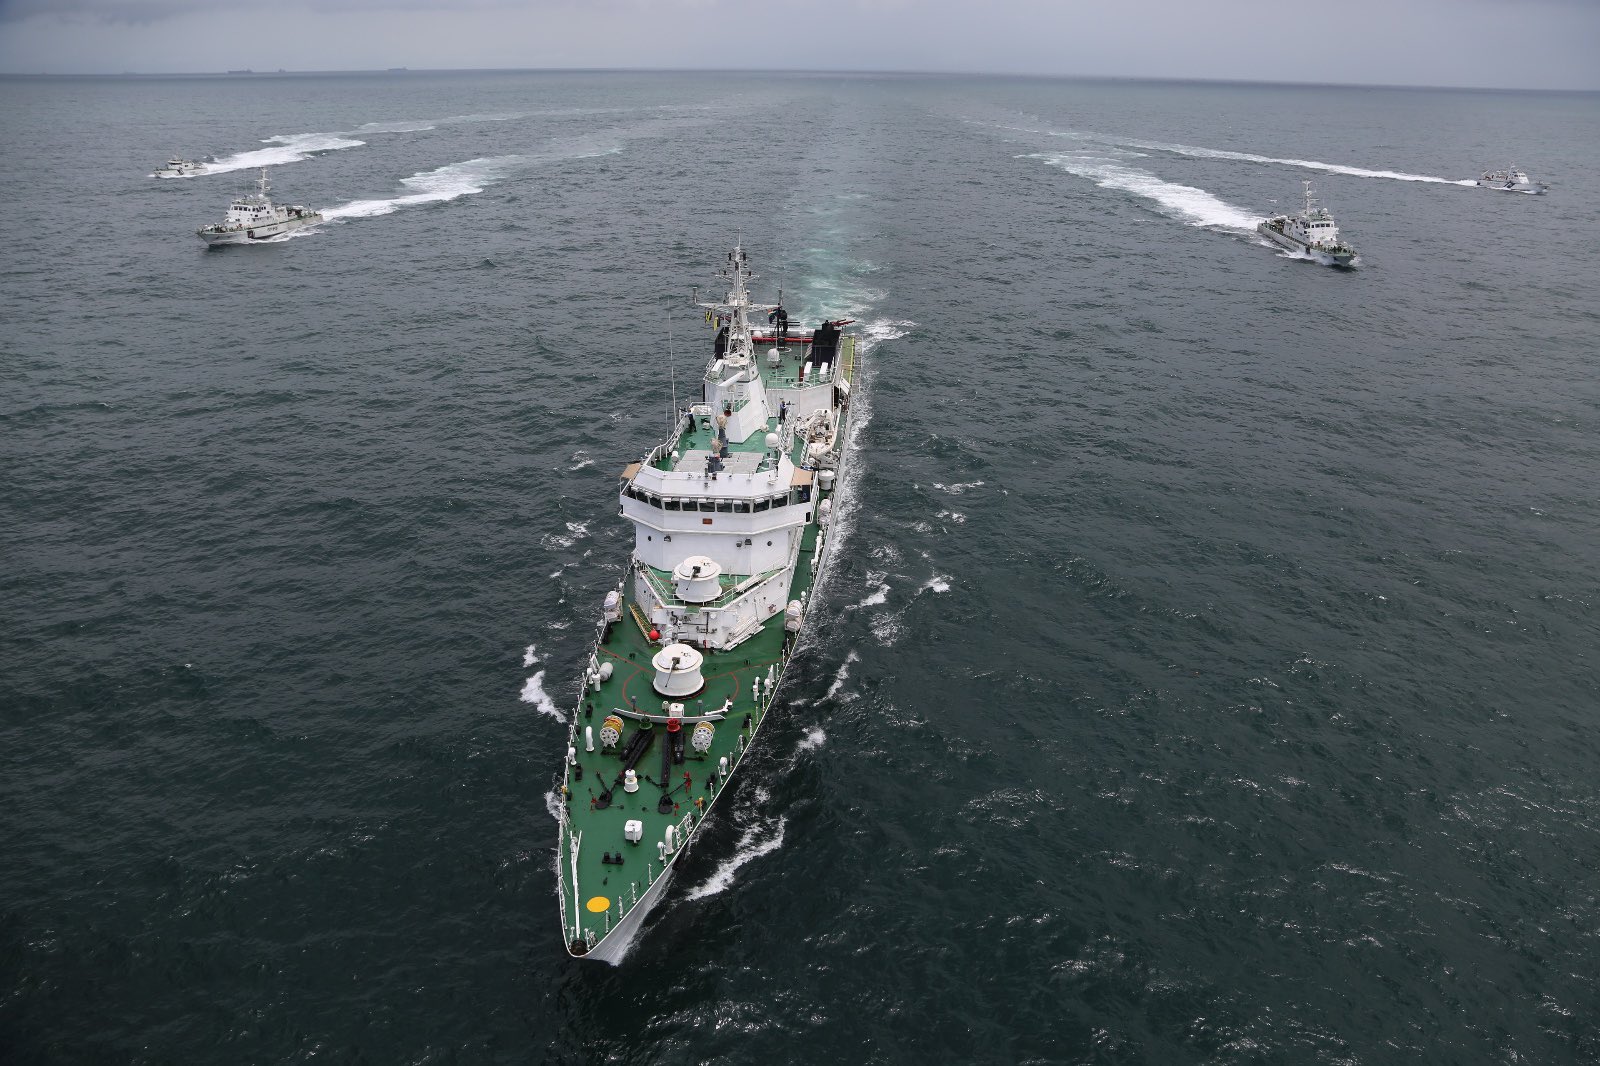 समुद्री संपर्क को मजबूत करने की साझेदारी: जाफना और नागपट्टिनम के बीच फिर शुरू
होगी नौका सेवा